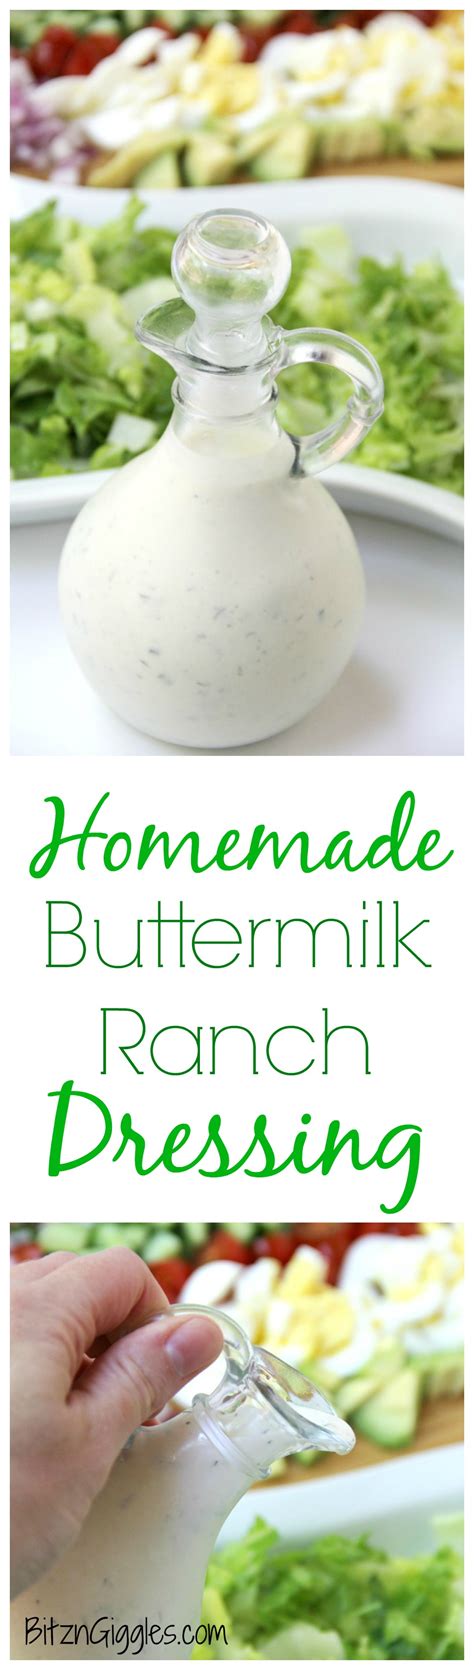 homemade buttermilk ranch dressing